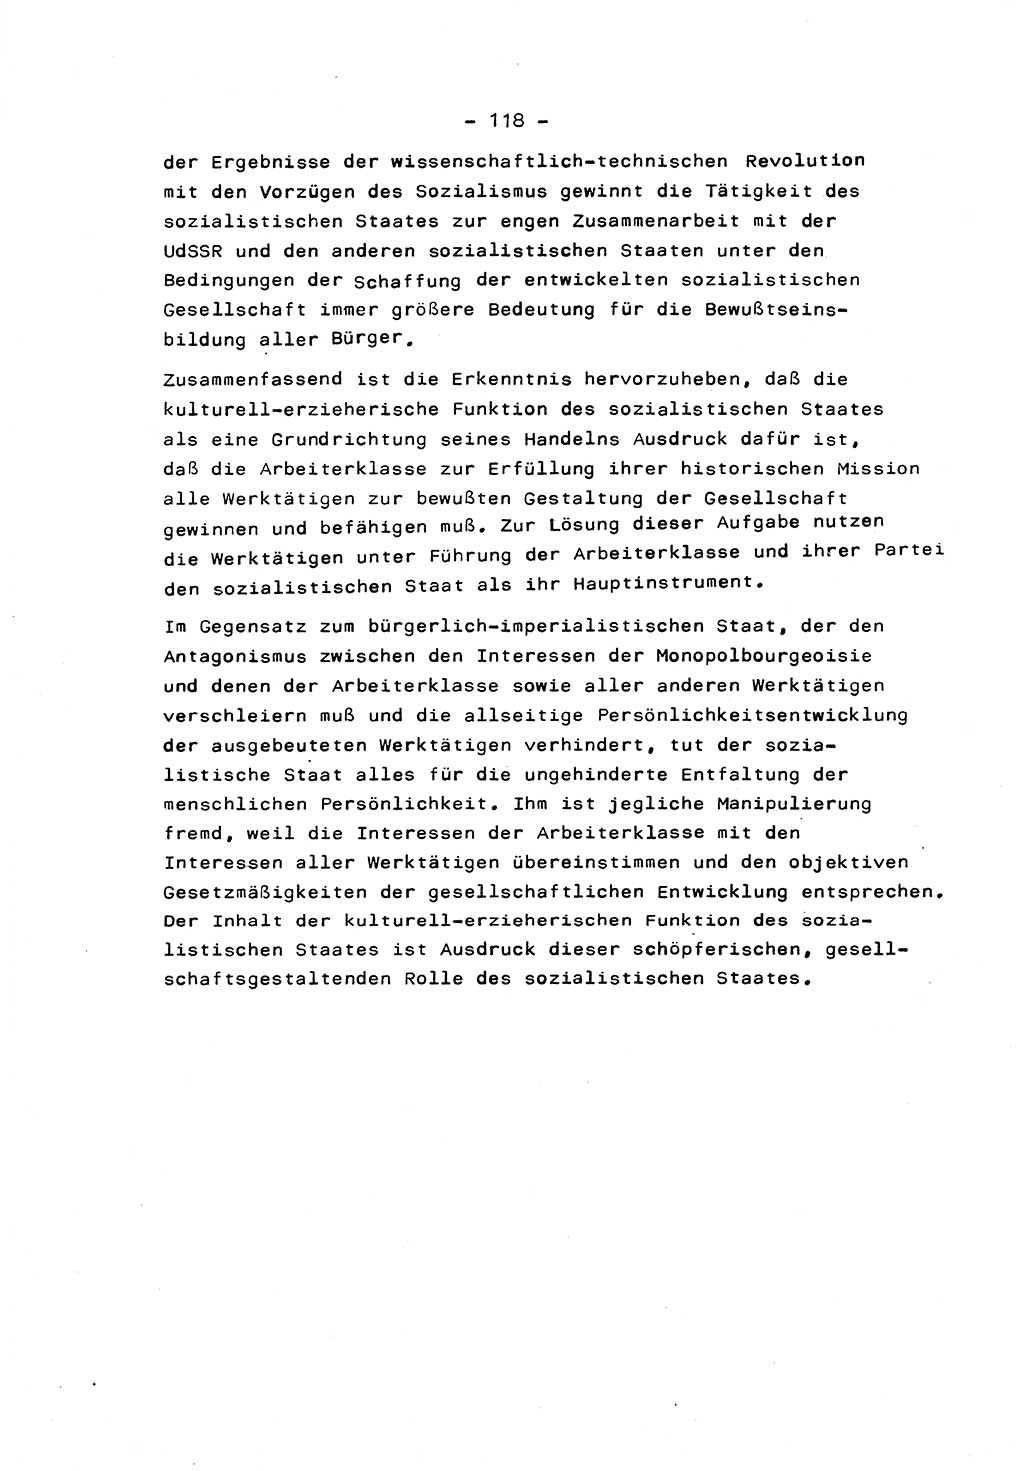 Marxistisch-leninistische Staats- und Rechtstheorie [Deutsche Demokratische Republik (DDR)] 1975, Seite 118 (ML St.-R.-Th. DDR 1975, S. 118)